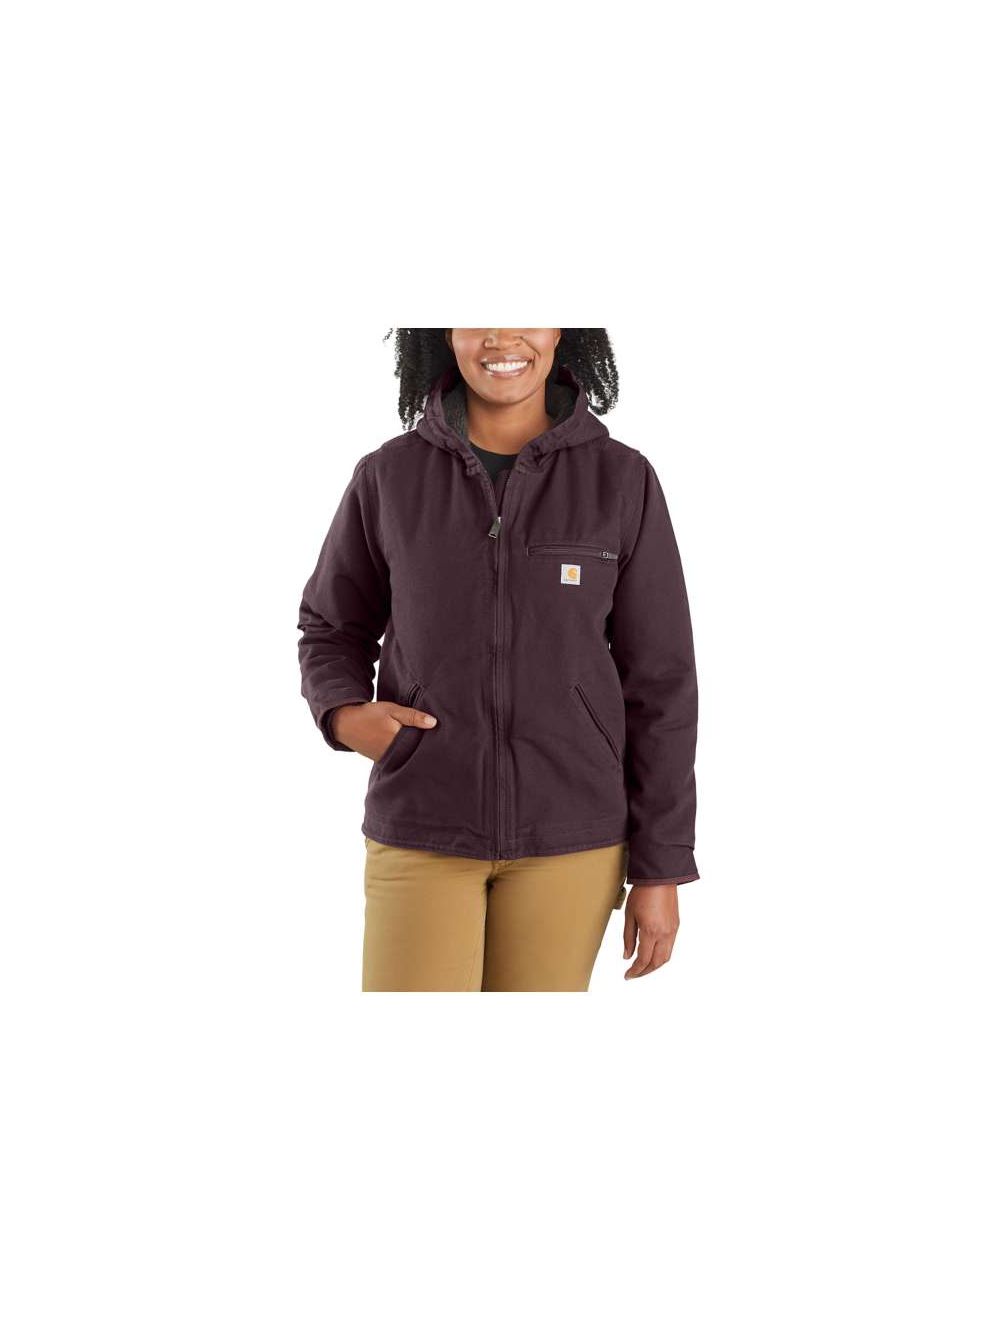 Carhartt Women's Loose Fit Washed Duck Sherpa Lined Jacket - 104292 – WORK  N WEAR